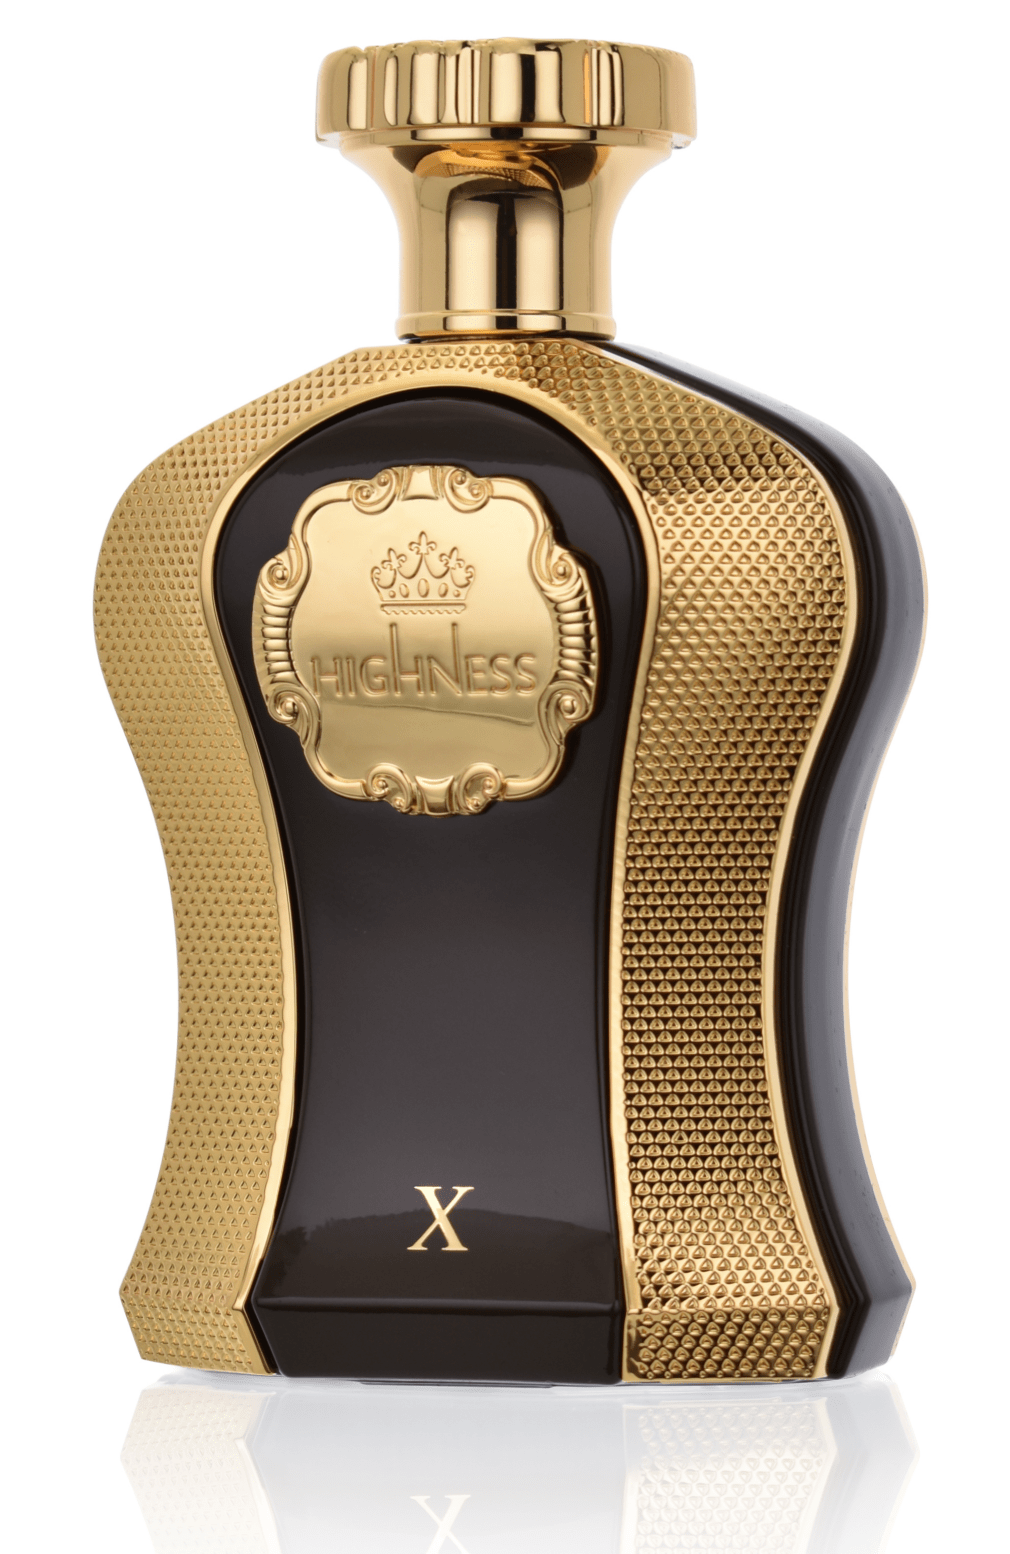 Afnan Highness X 100 ml Eau de Parfum    